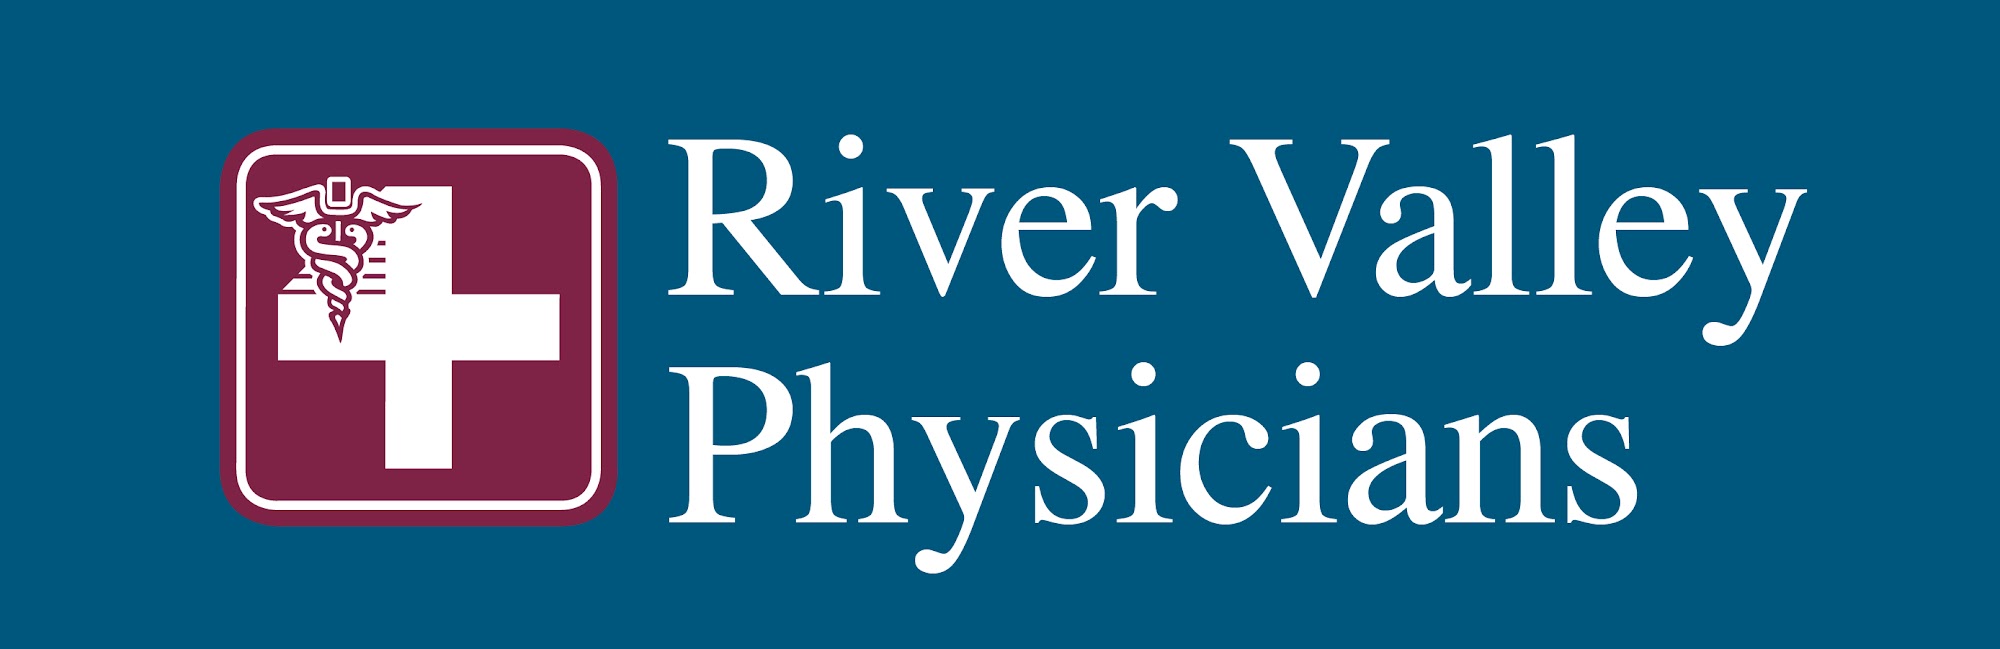 River Valley Physicians Family Medicine 15565 OH-170, Calcutta Ohio 43920